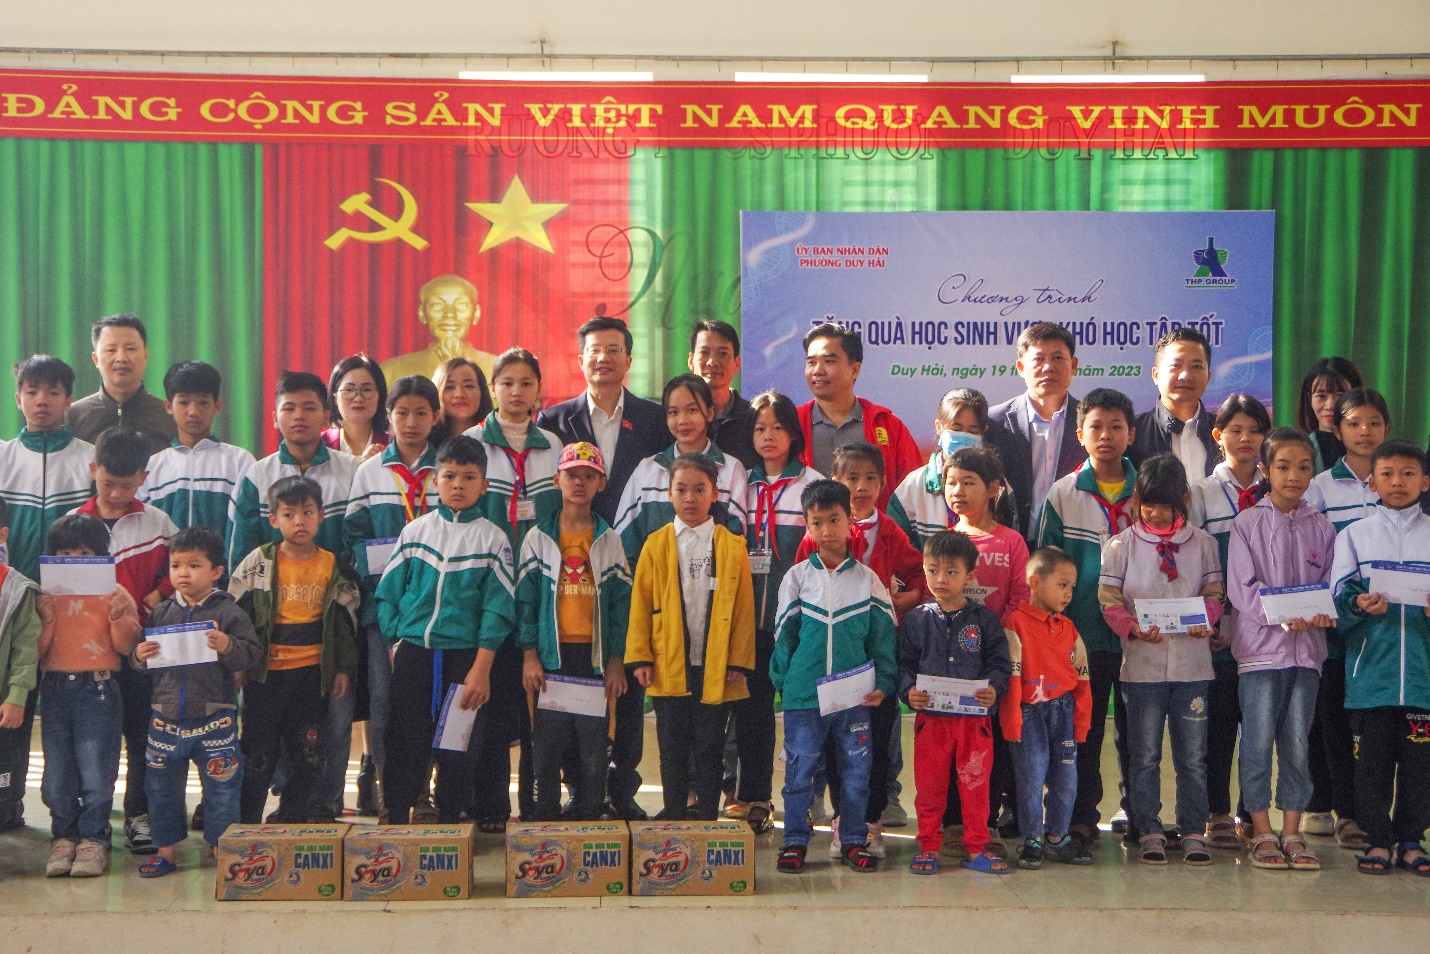 Tập đoàn Tân Hiệp Phát tiếp tục tiếp sức học sinh vượt khó tại tỉnh Hà Nam